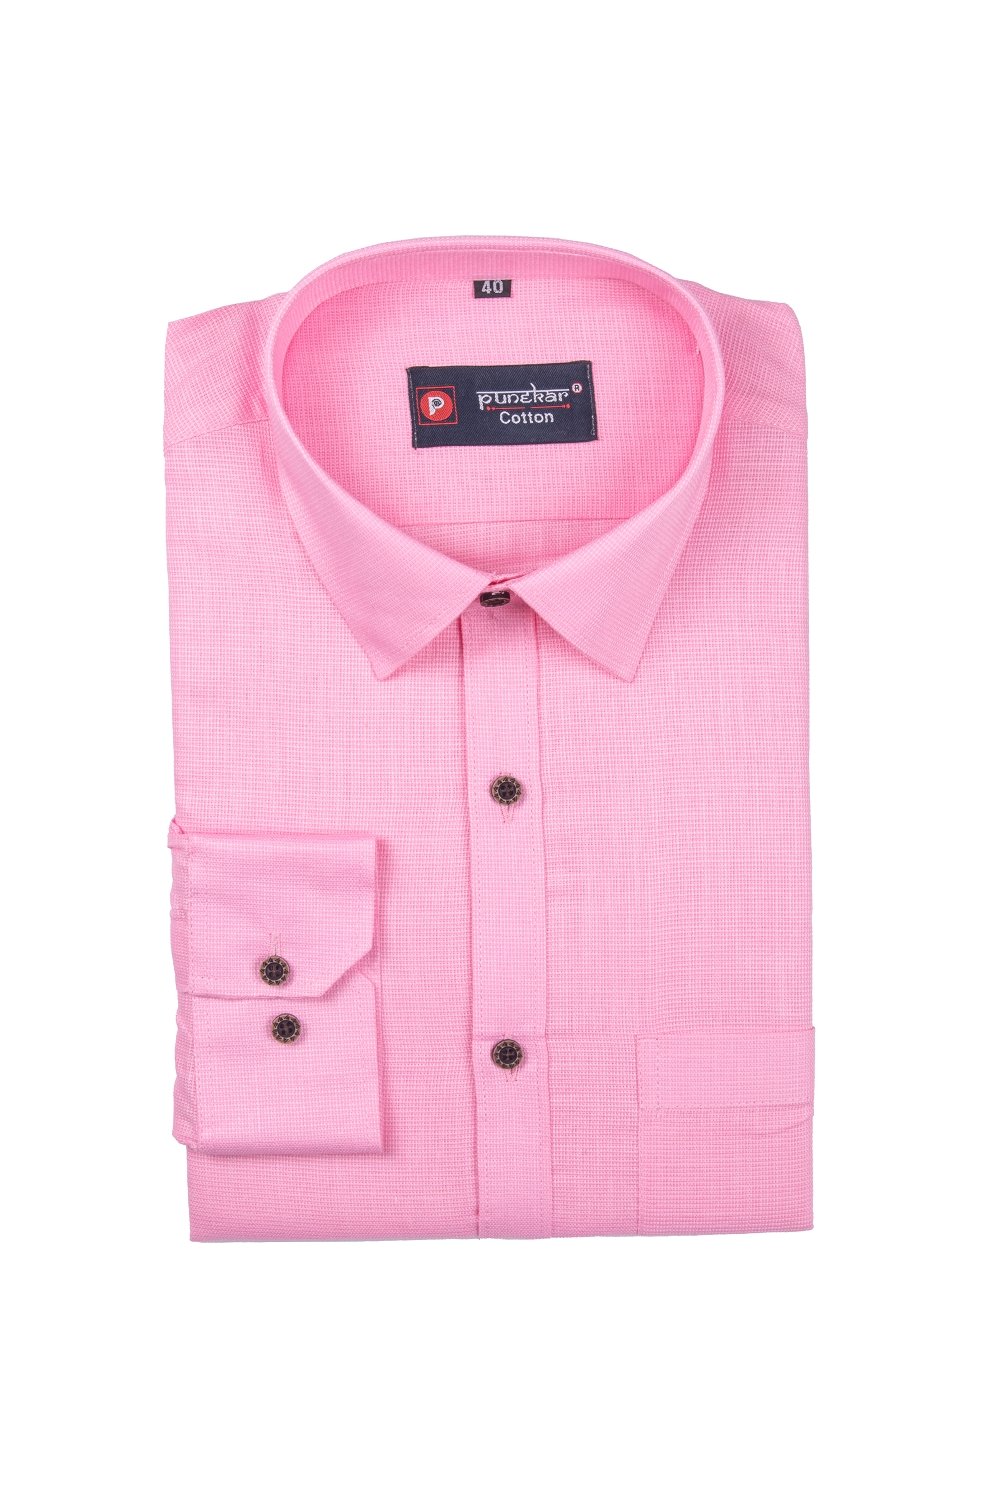 Punekar Cotton Pink Color Silky Linen Cotton Shirt for Men's. - Punekar Cotton